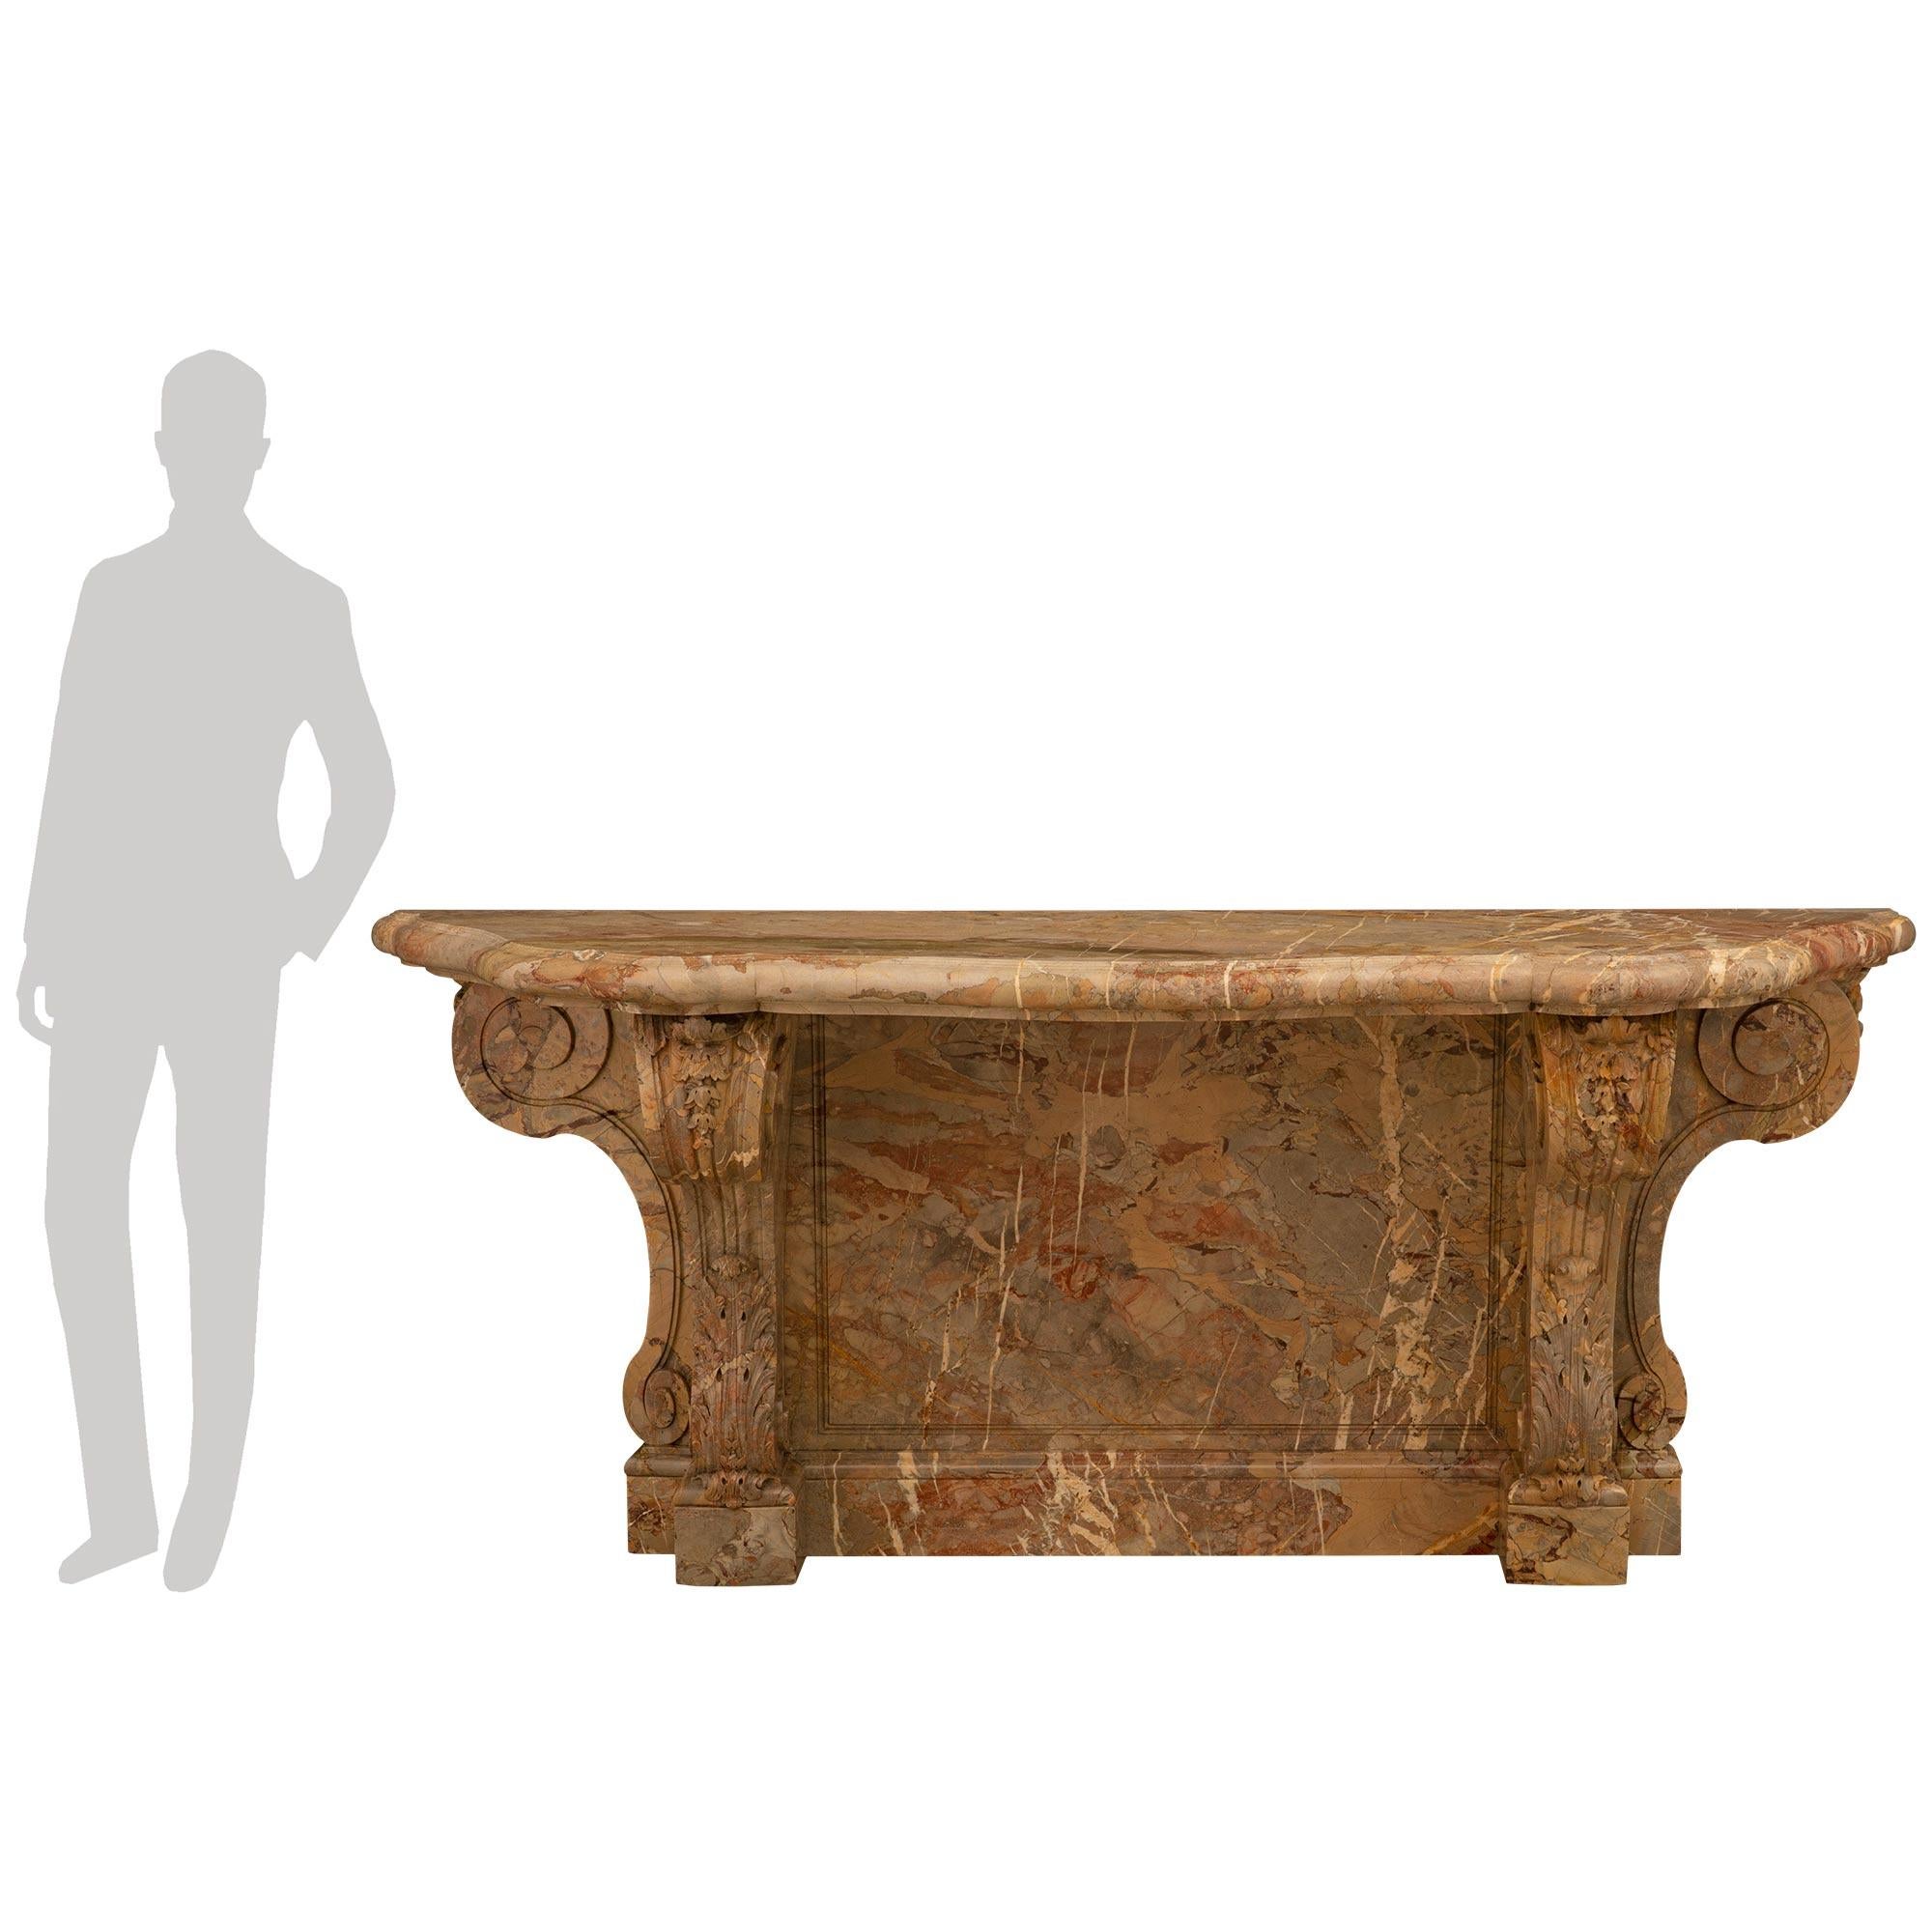 





Console en marbre de Sarrancolin de style Louis XVI du 19ème siècle, très impressionnante et de grande taille. La console repose sur deux pieds en forme de S, avec des feuilles d'acanthe dans la partie inférieure et un feuillage sculpté dans